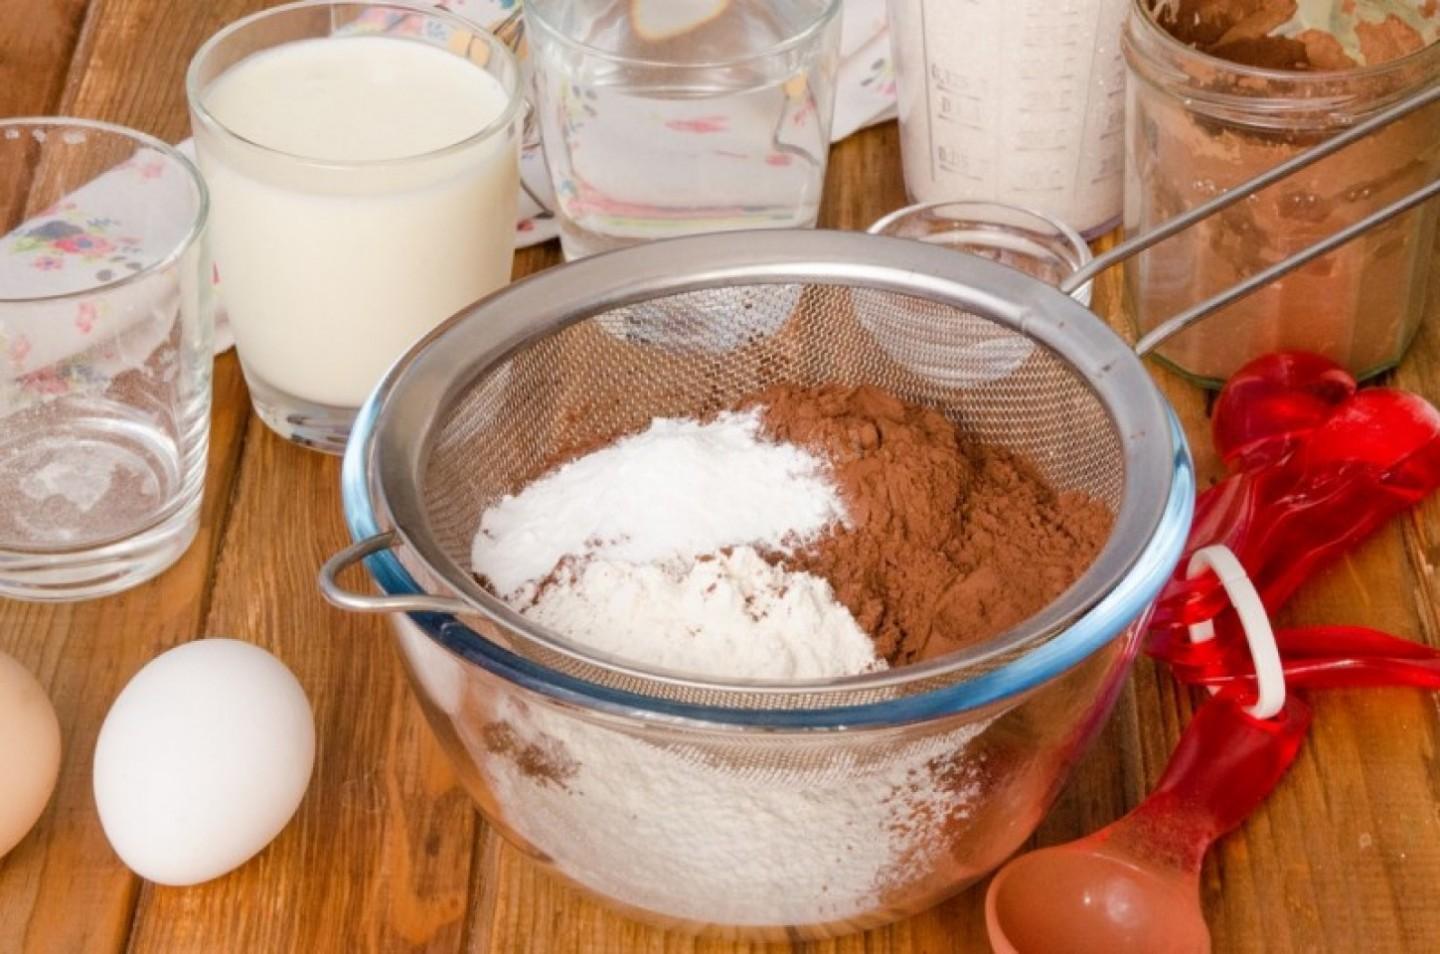 Кефир 1 яйцо мука сахар. Ингредиенты для шоколадного бисквита. Мука для бисквита. Мука молоко яйца сахар. Мука сода яйца и сахар.